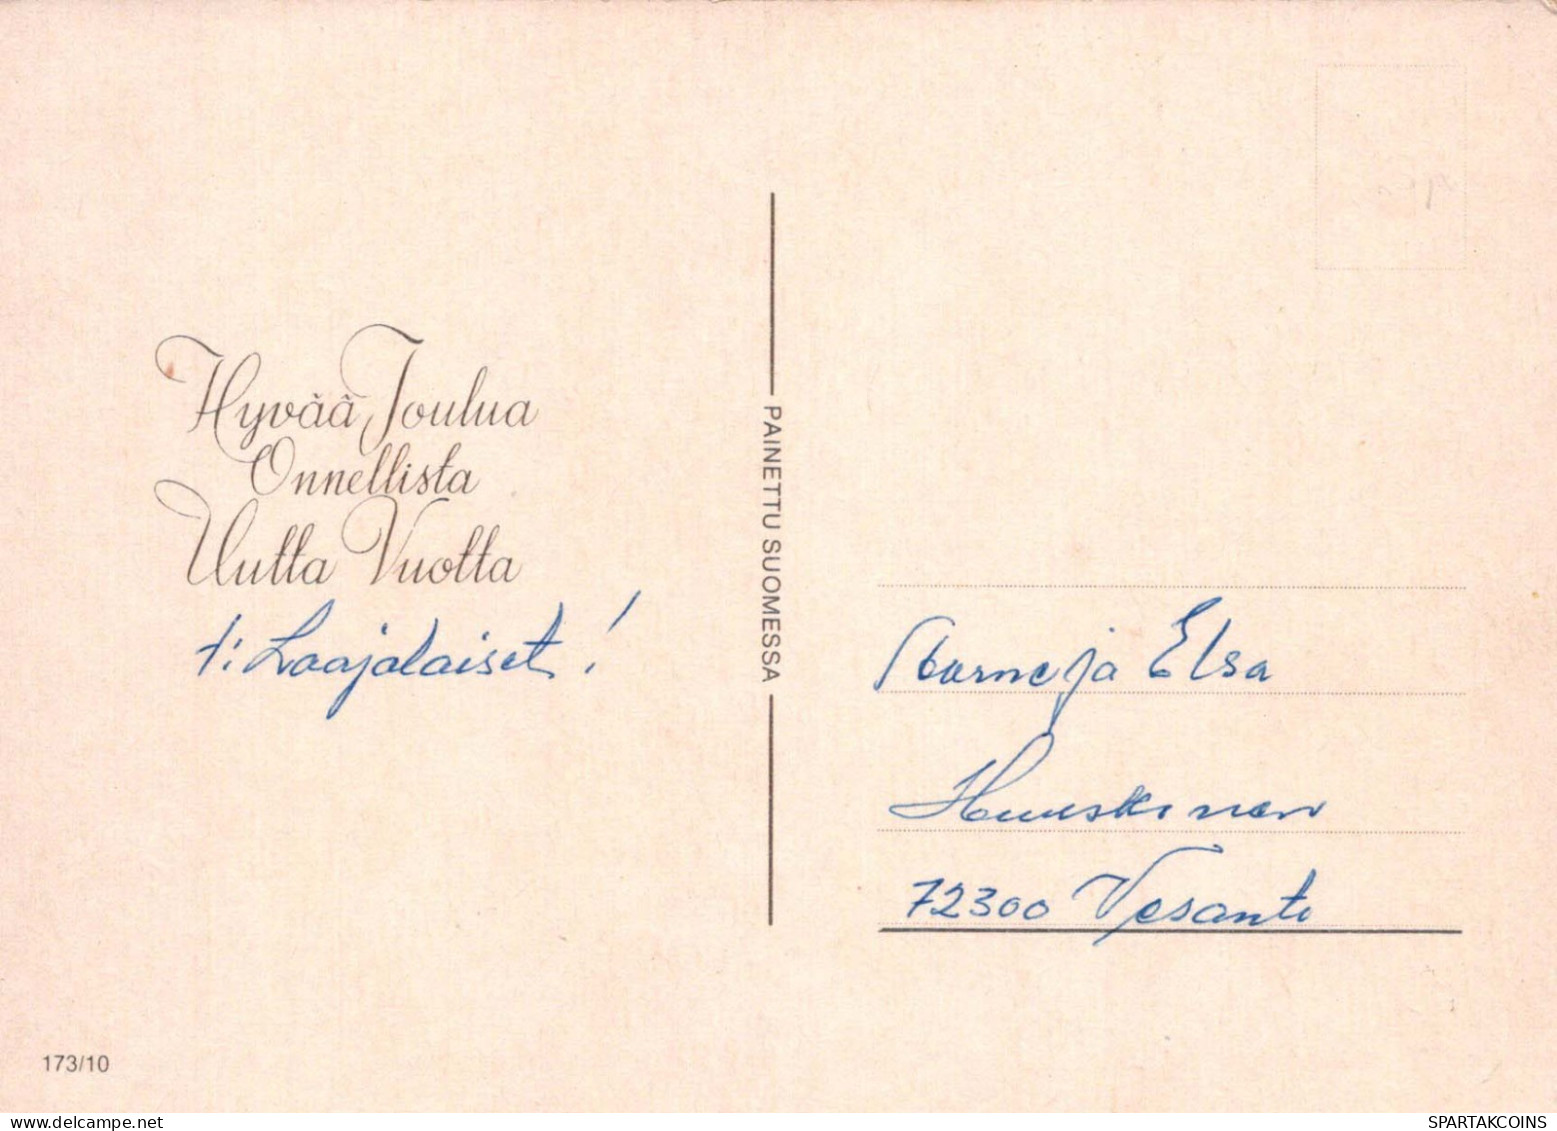 Bonne Année Noël GNOME Vintage Carte Postale CPSM #PBL914.FR - New Year